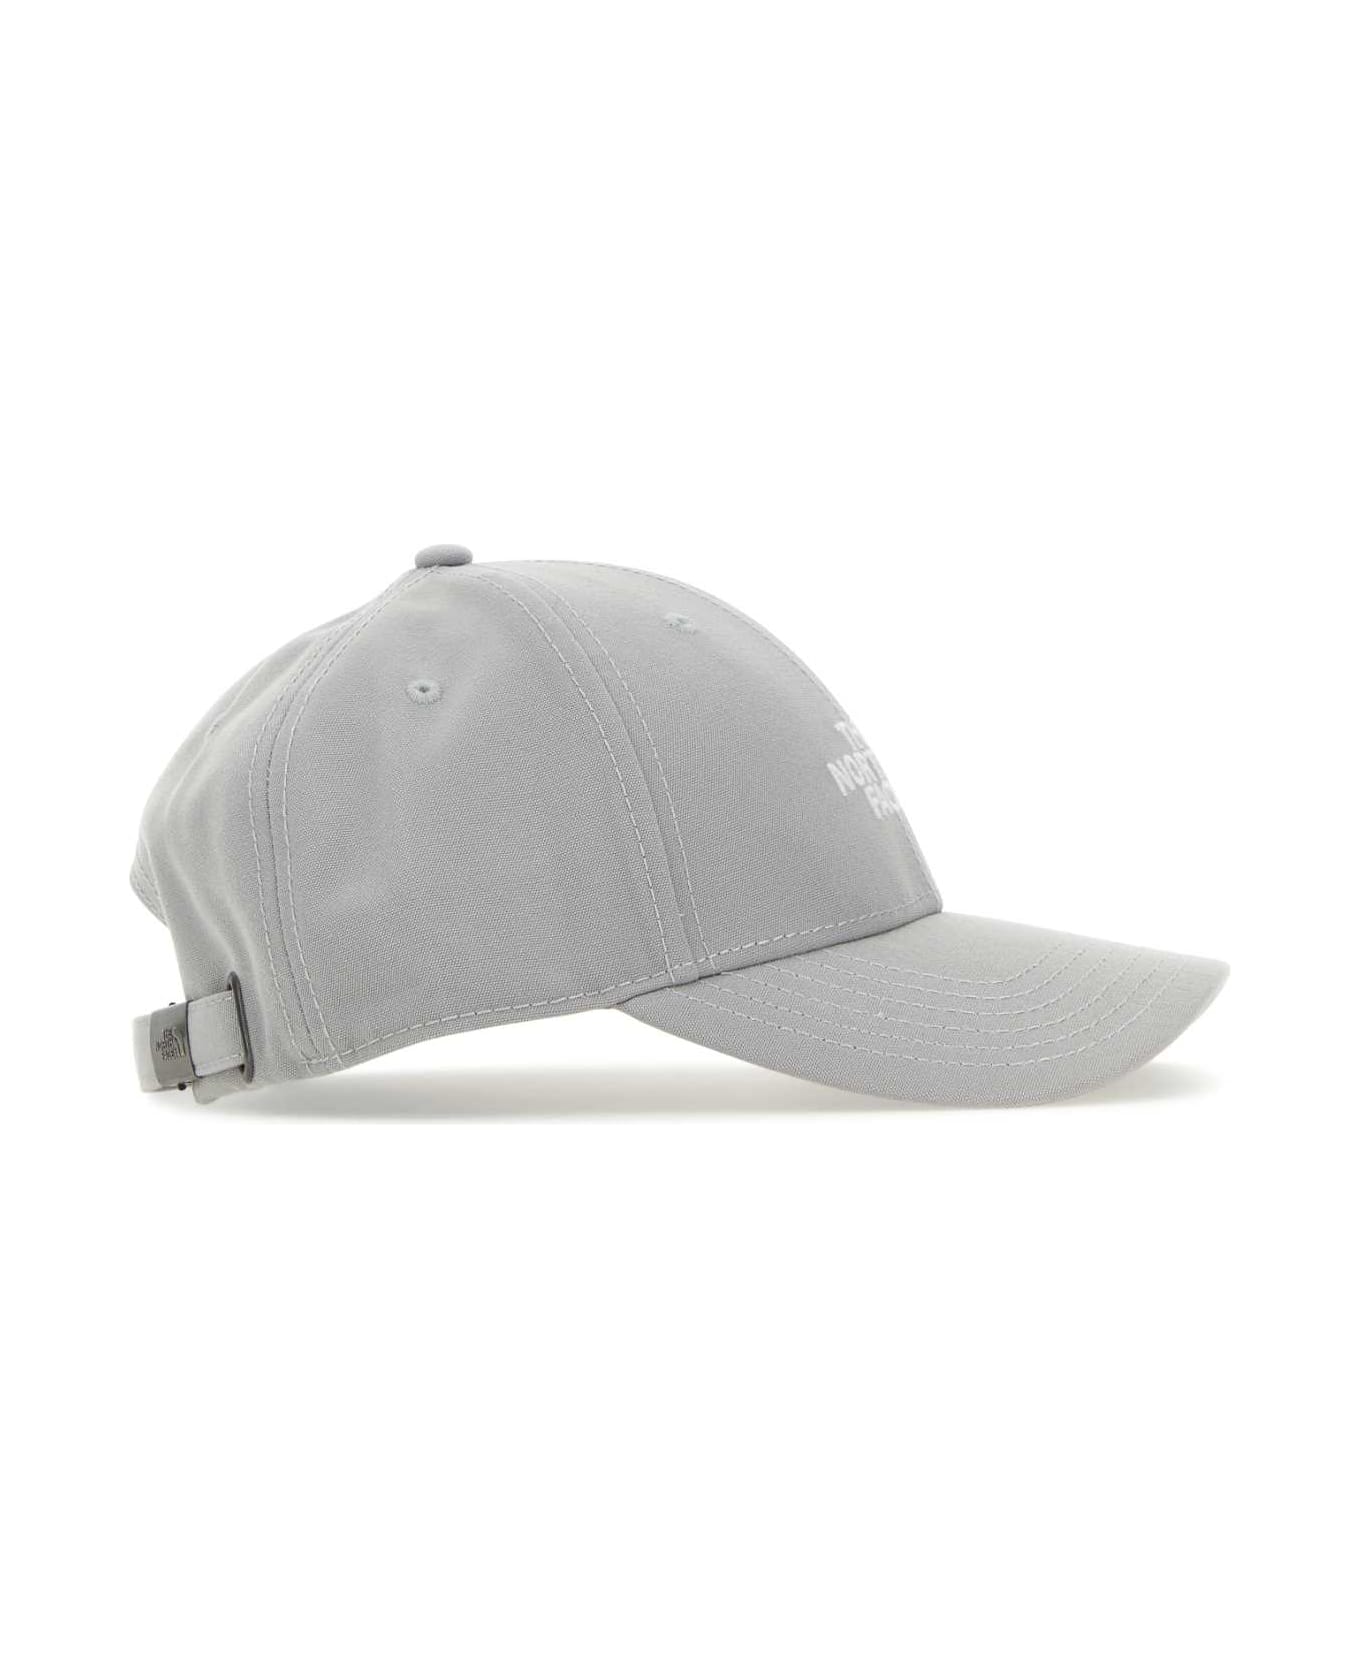 The North Face Grey Polyester Baseball Cap - MELD GREY 帽子